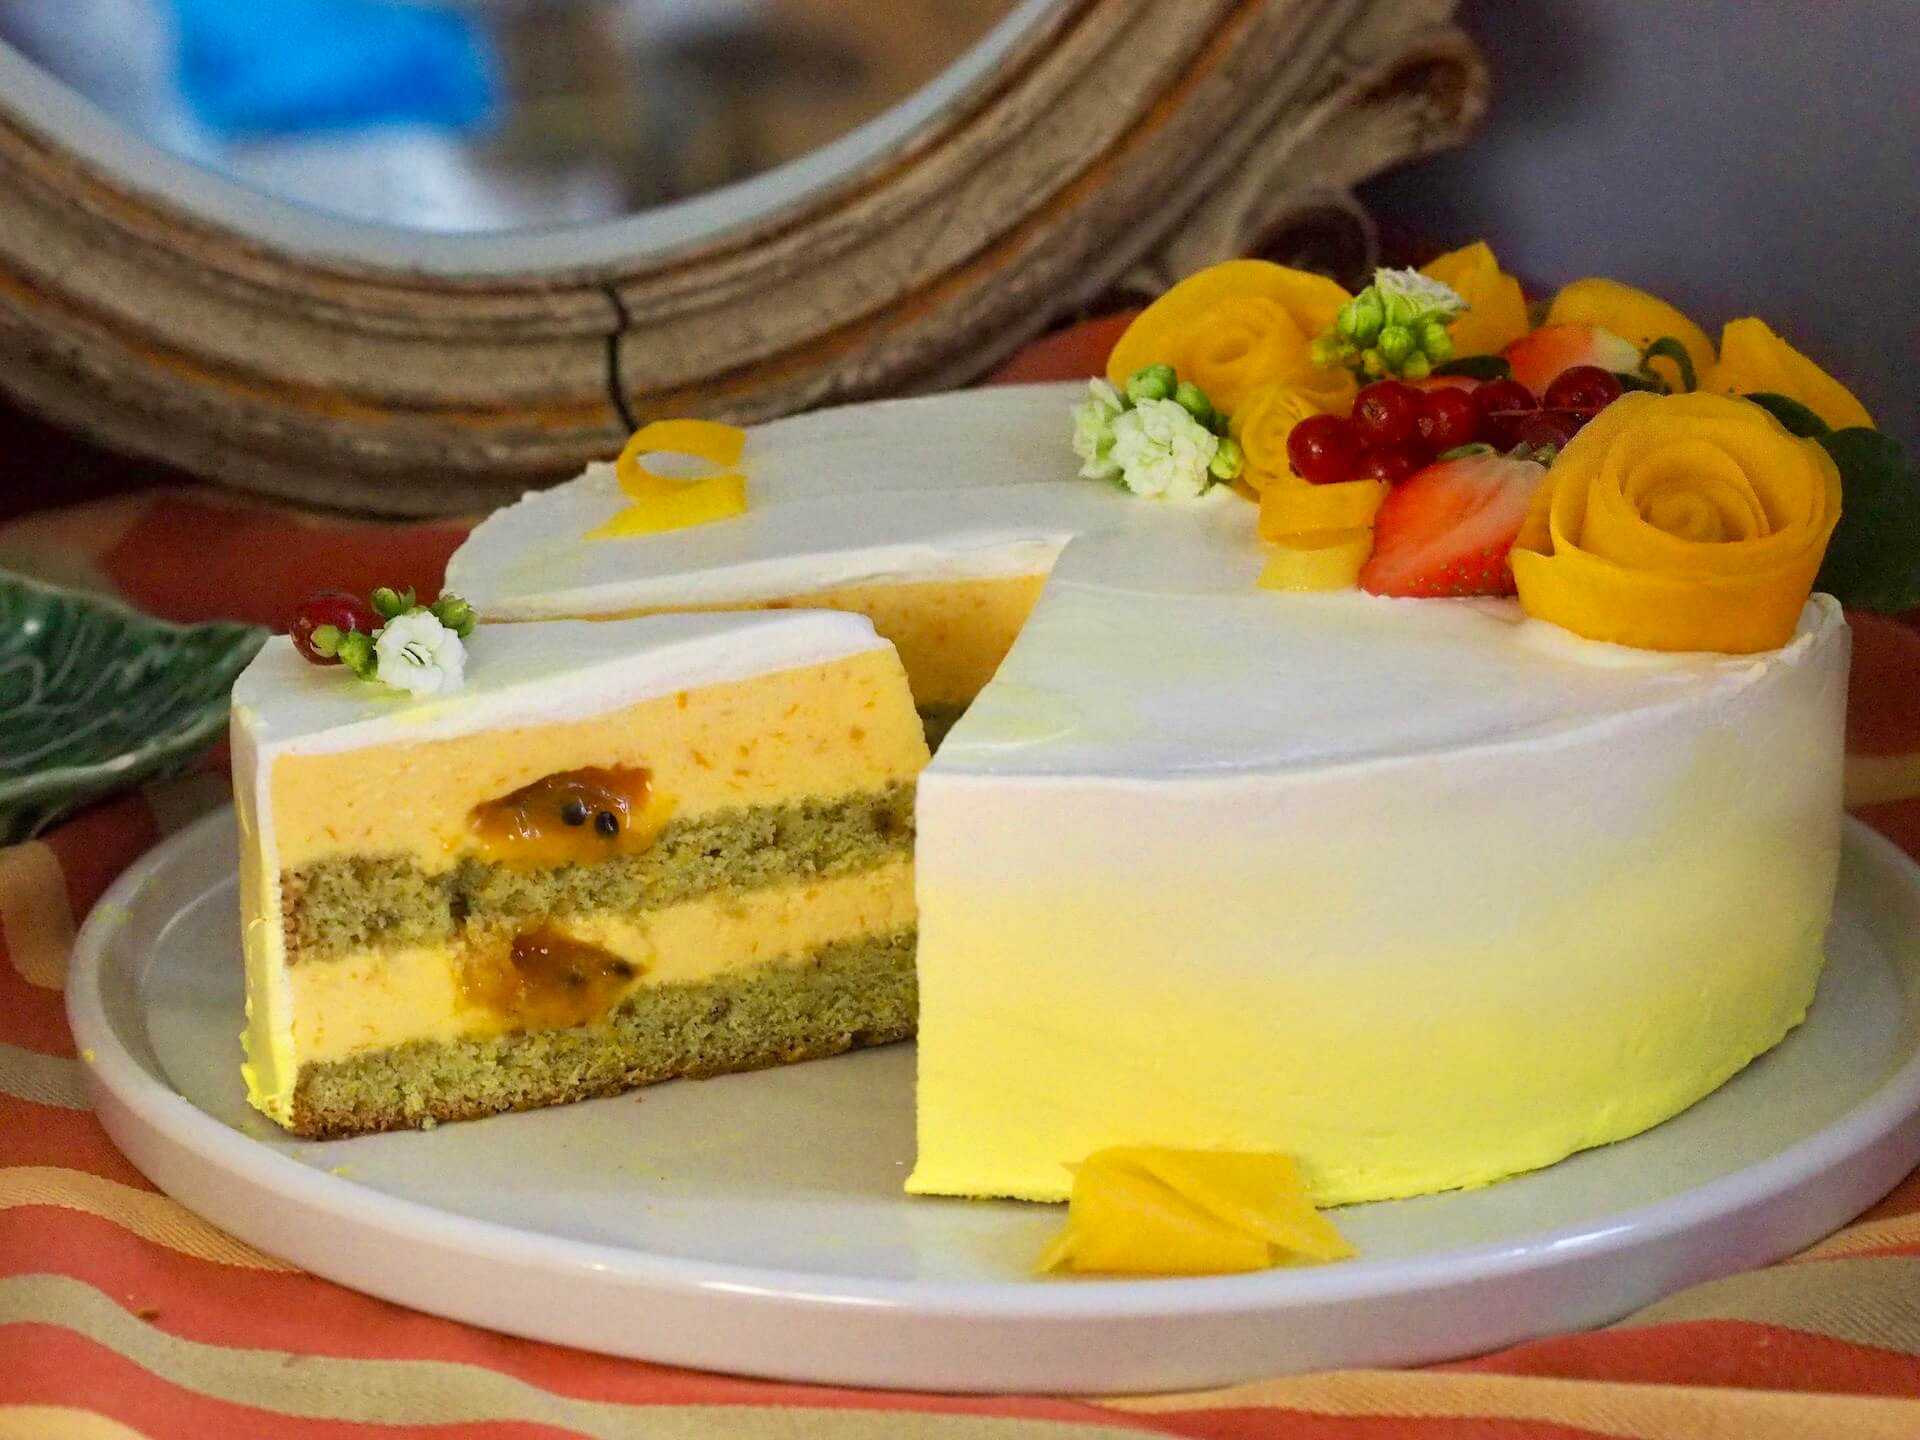 Муссовый торт с зеркальной глазурью: 4 сладких рецепта